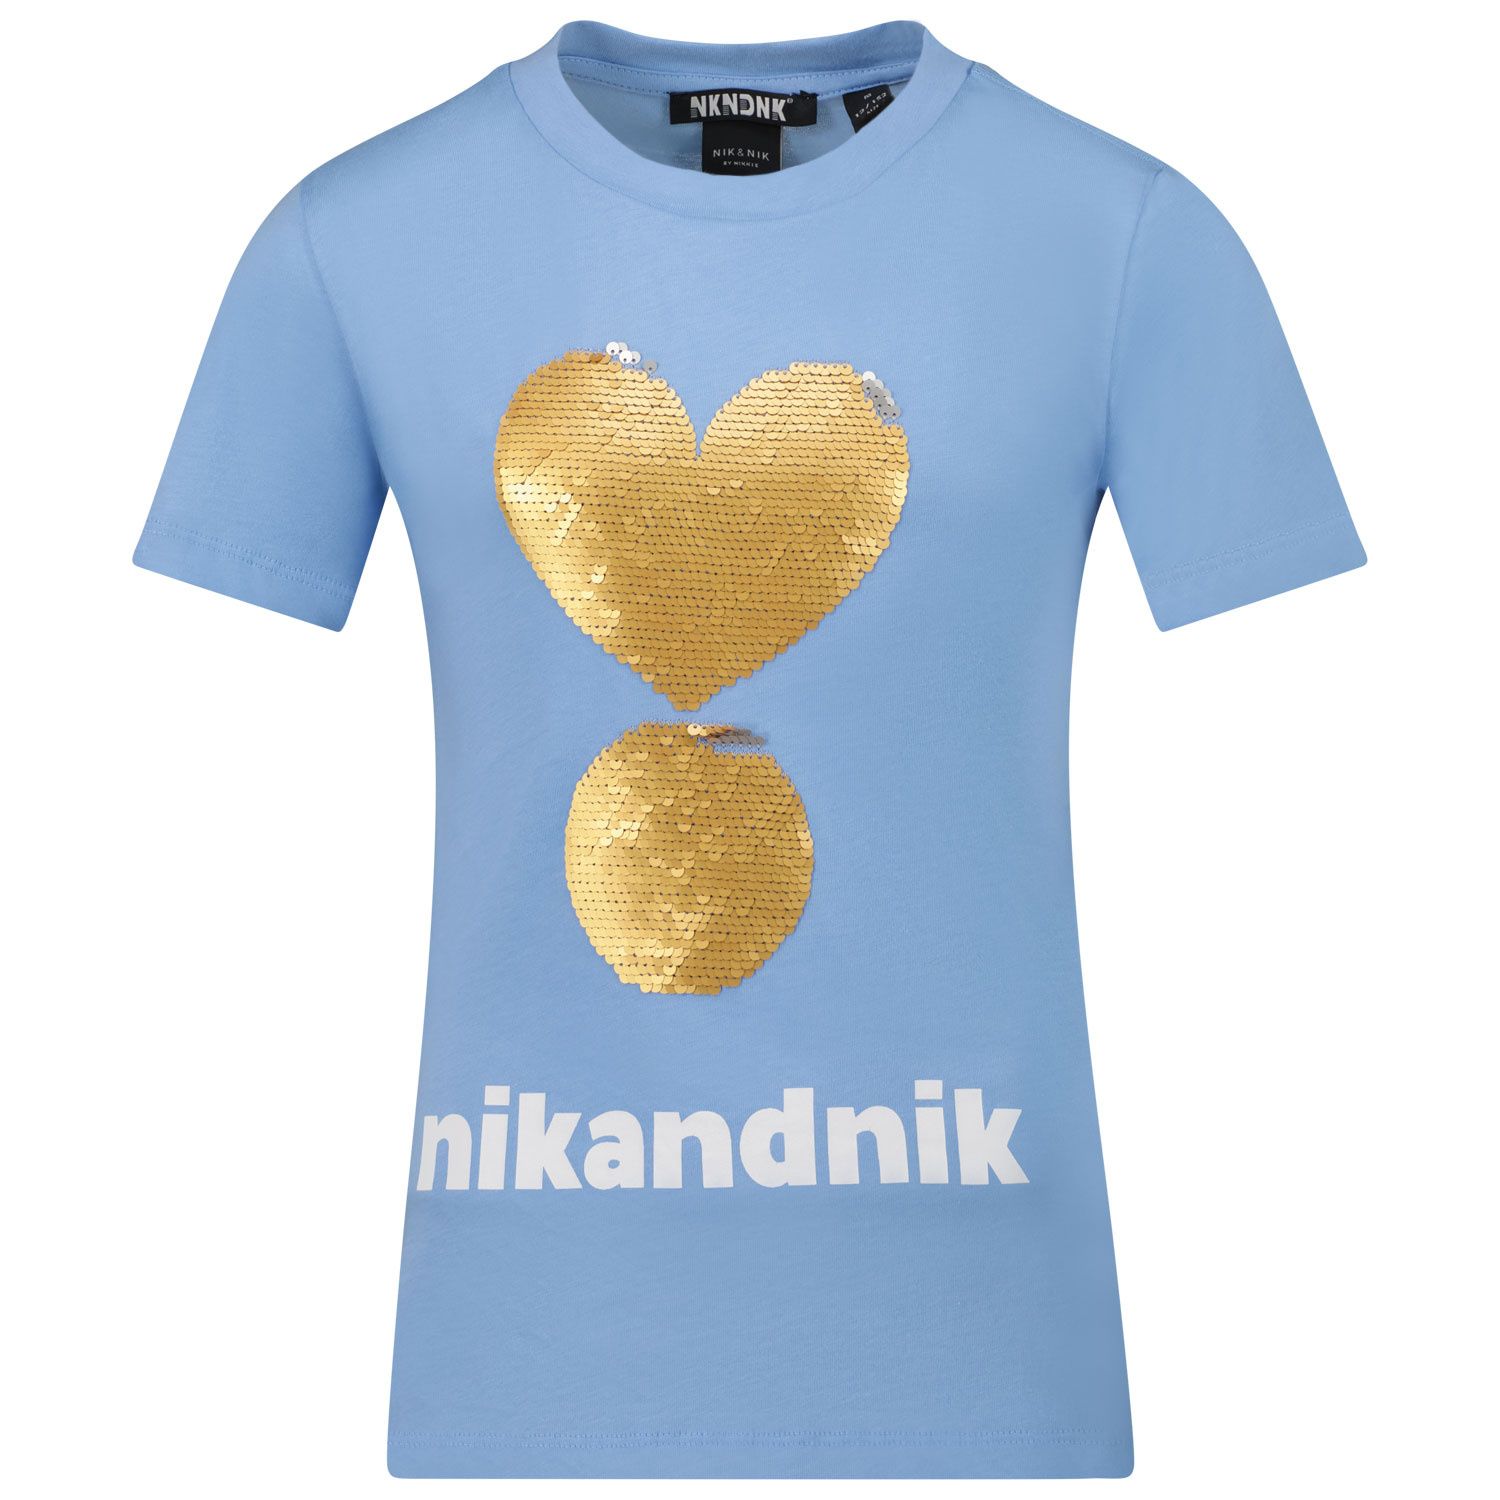 Picture of NIK&NIK G8957 kids t-shirt light blue